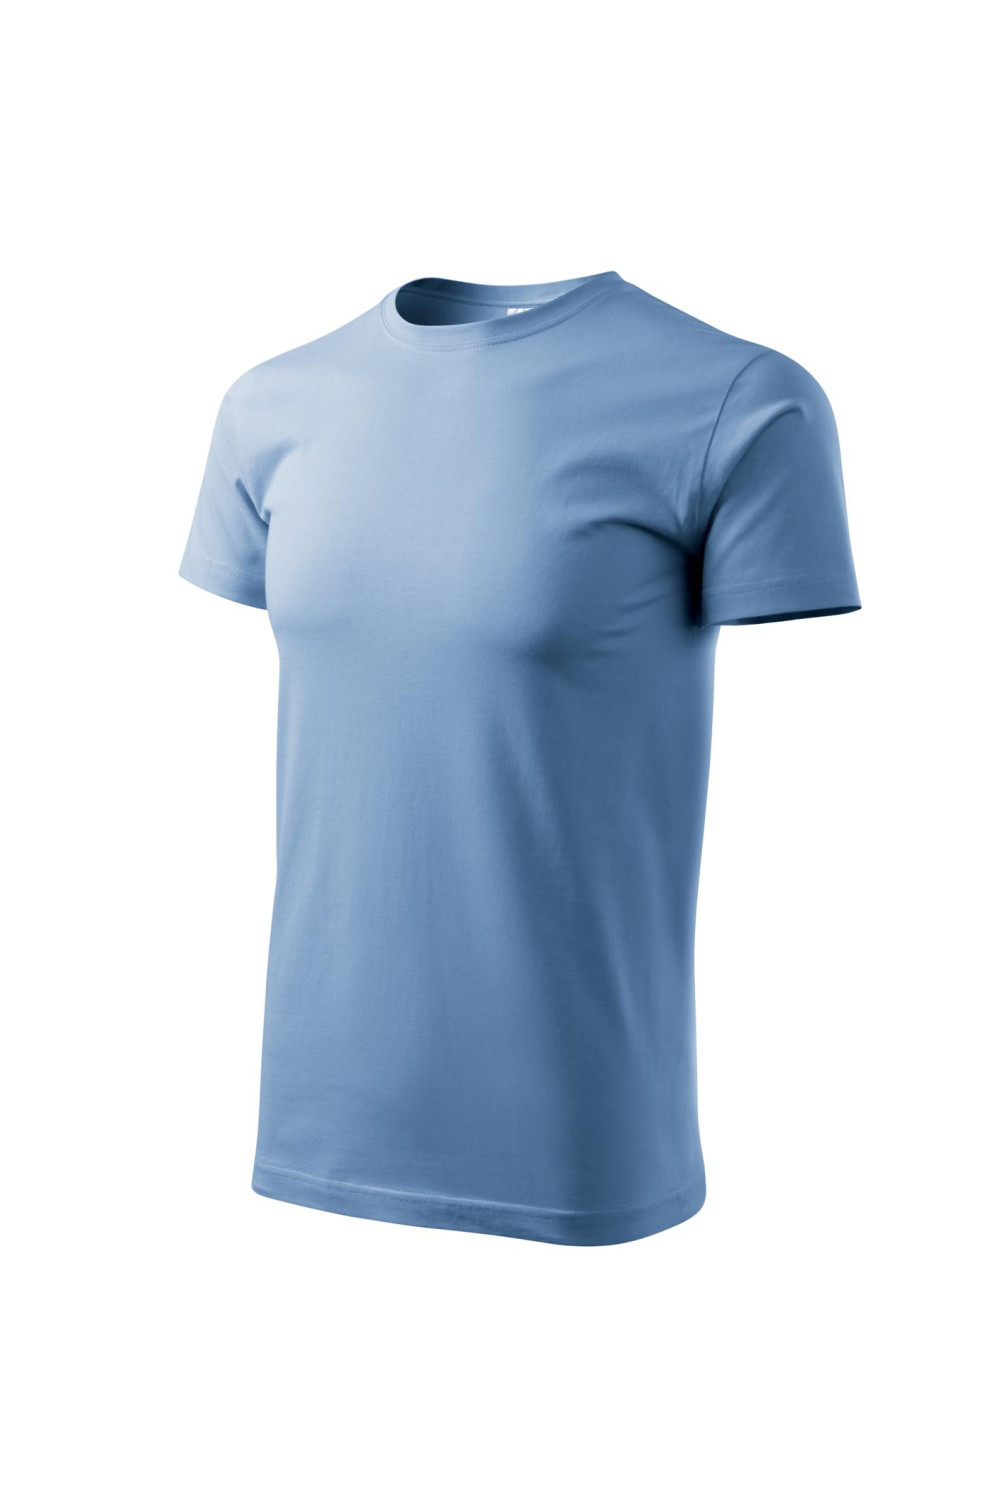 Koszulka męska 100% bawełna BASIC 129  kolor błękitny